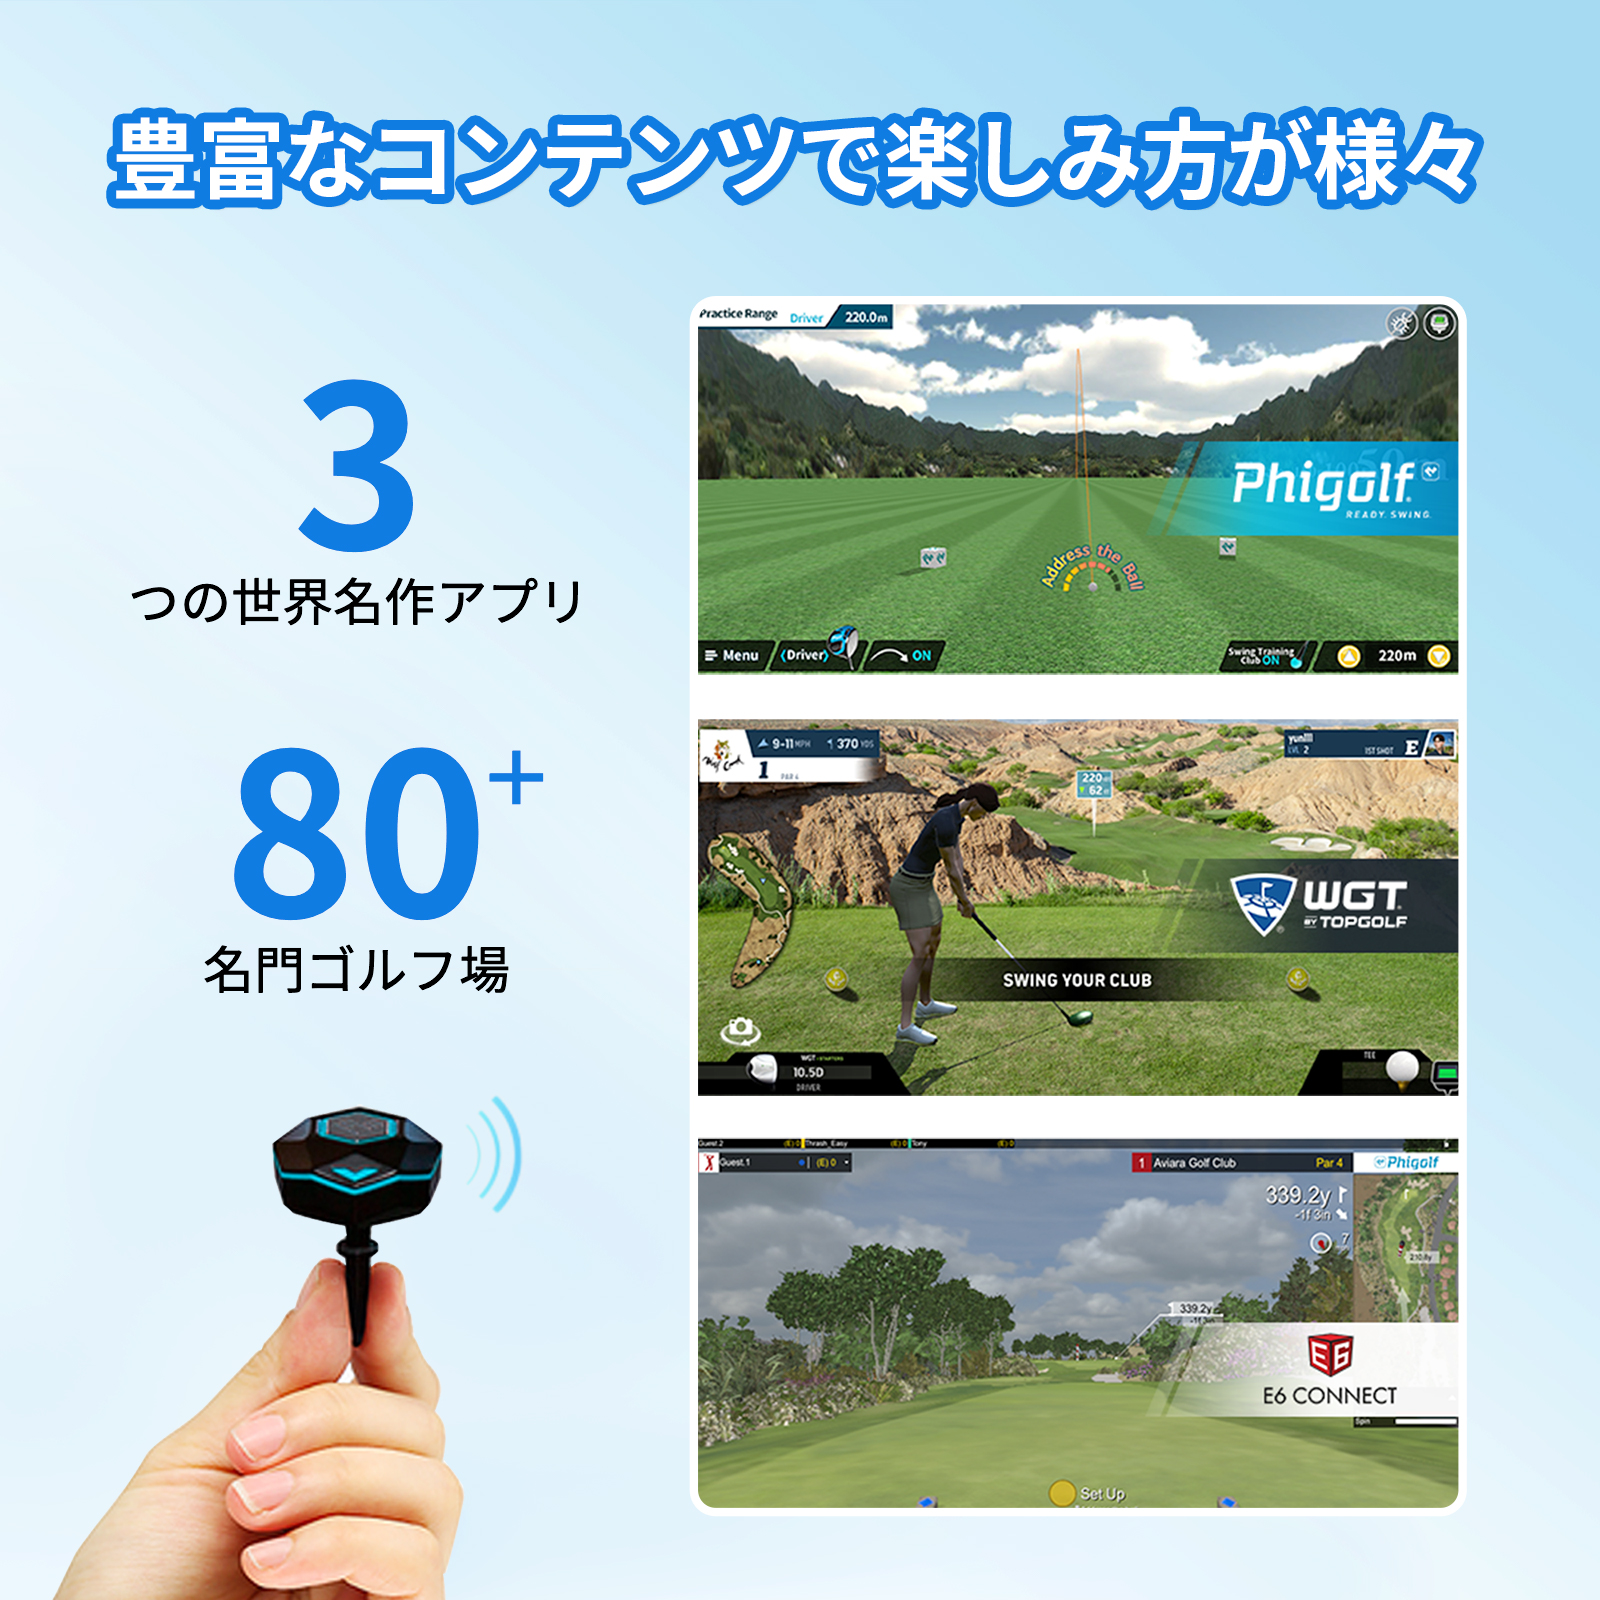 Phigolf 2(ファイゴルフ2)ゴルフ練習器具 スイング練習器 ヘッド